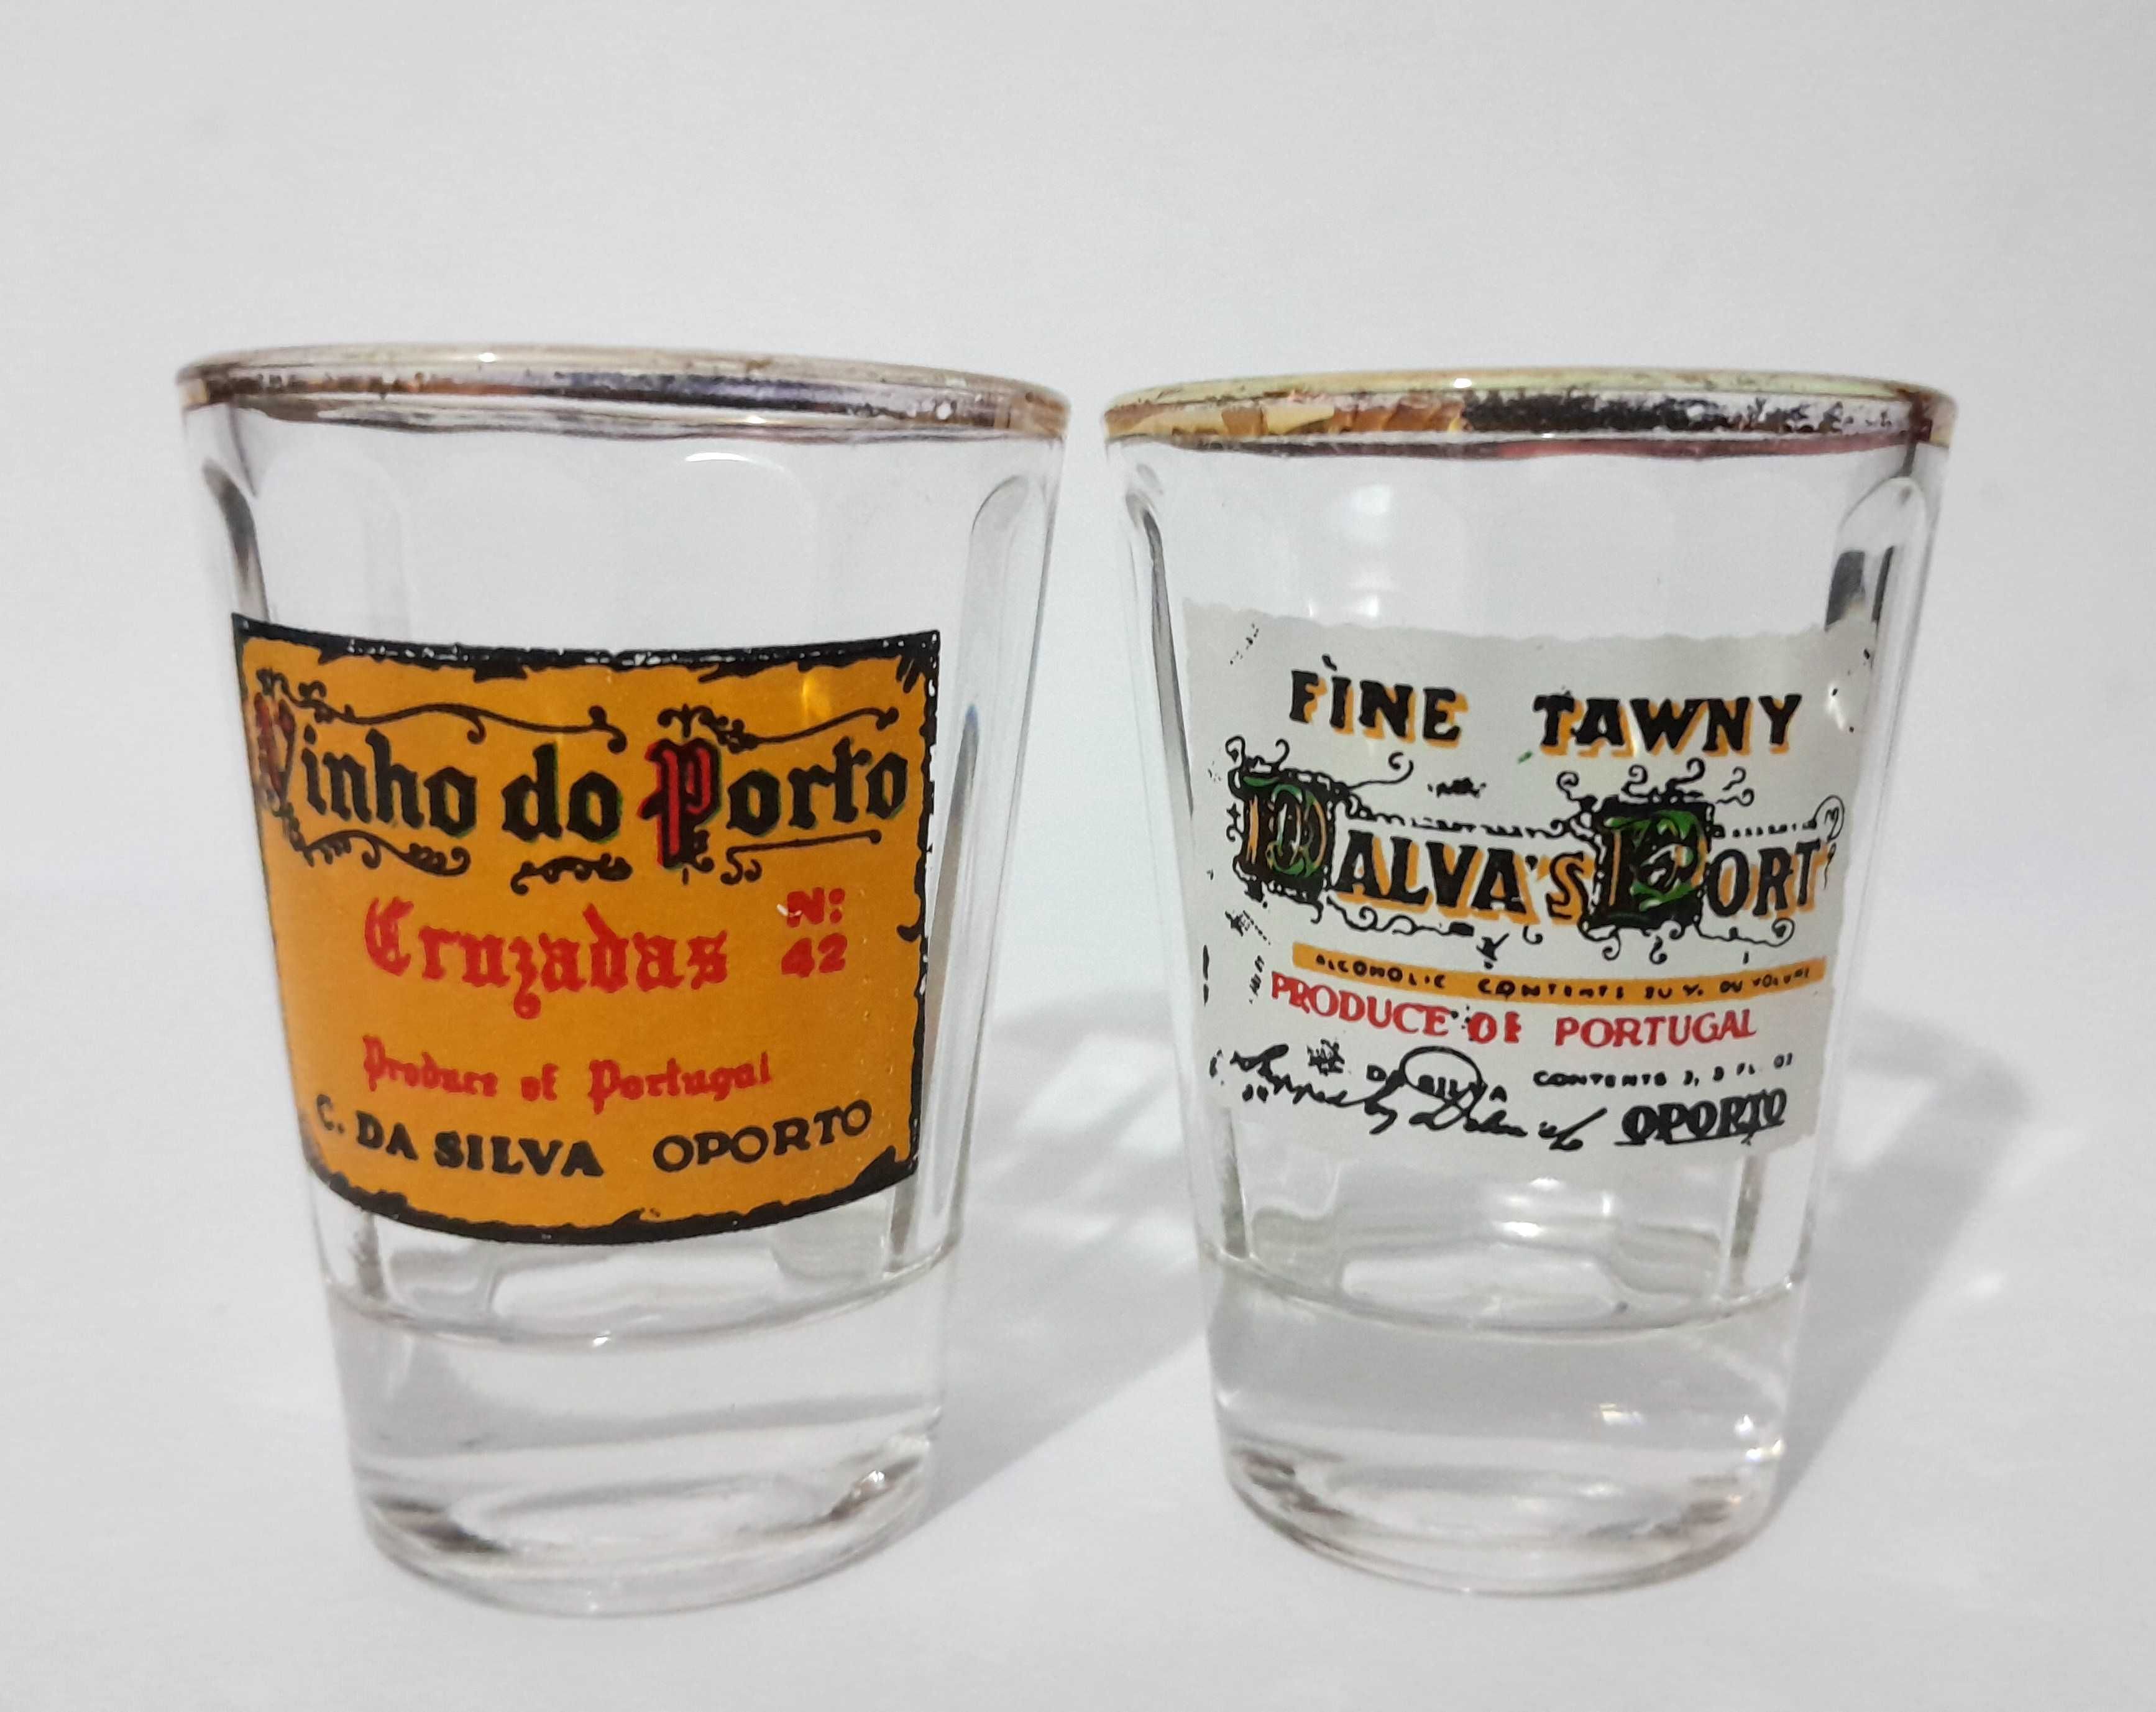 3 copos pequenos com publicidade a marcas de Vinho do Porto - vintage